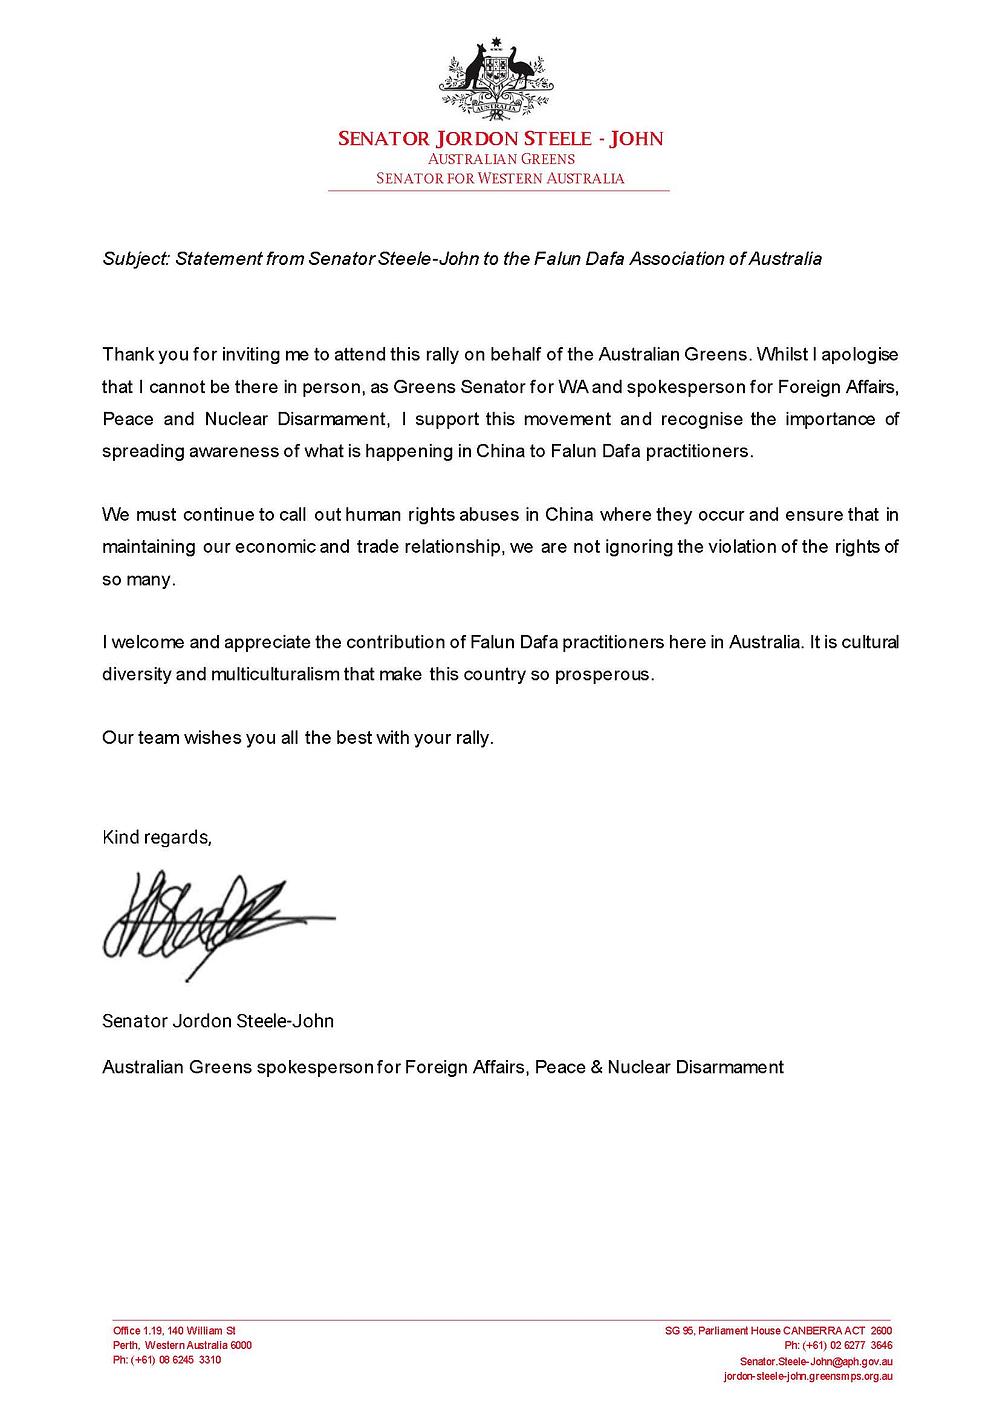  Senator Džordan Stil-Džon iz australijske stranke Zelenih poslao je pismo podrške mitingu Falun Gong praktikanata.